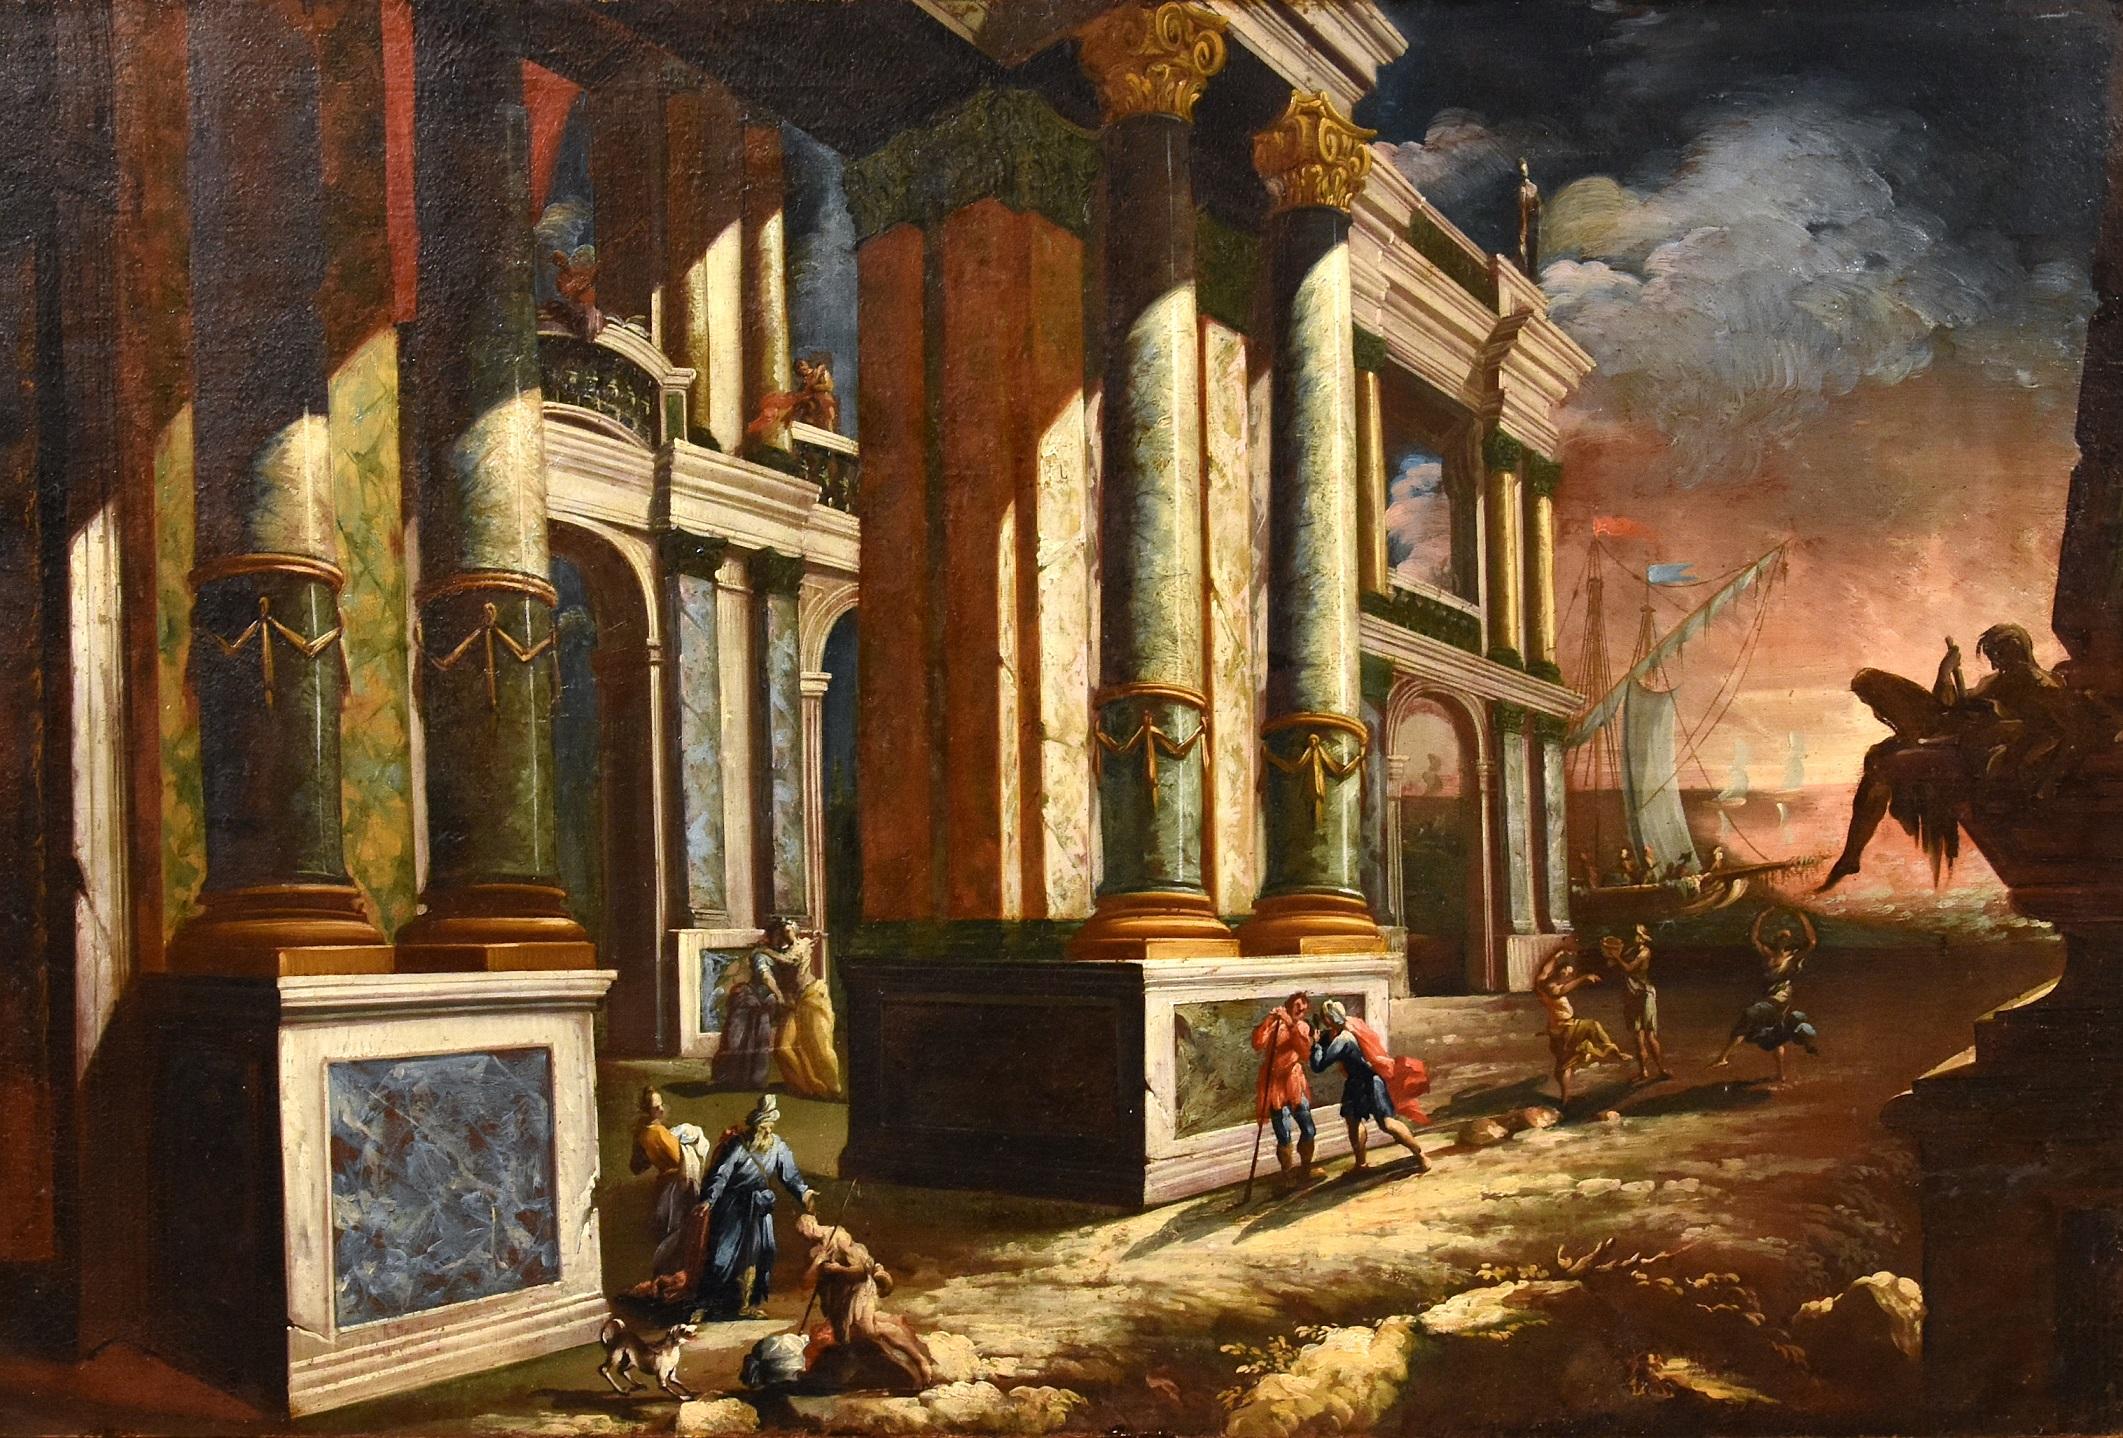 Küstenlandschaft Capriccio Saeys Paint Öl auf Leinwand 17/18. Jahrhundert Flämisch  (Alte Meister), Painting, von Jacob Ferdinand Saeys (Antwerp 1658 - Vienna 1726)